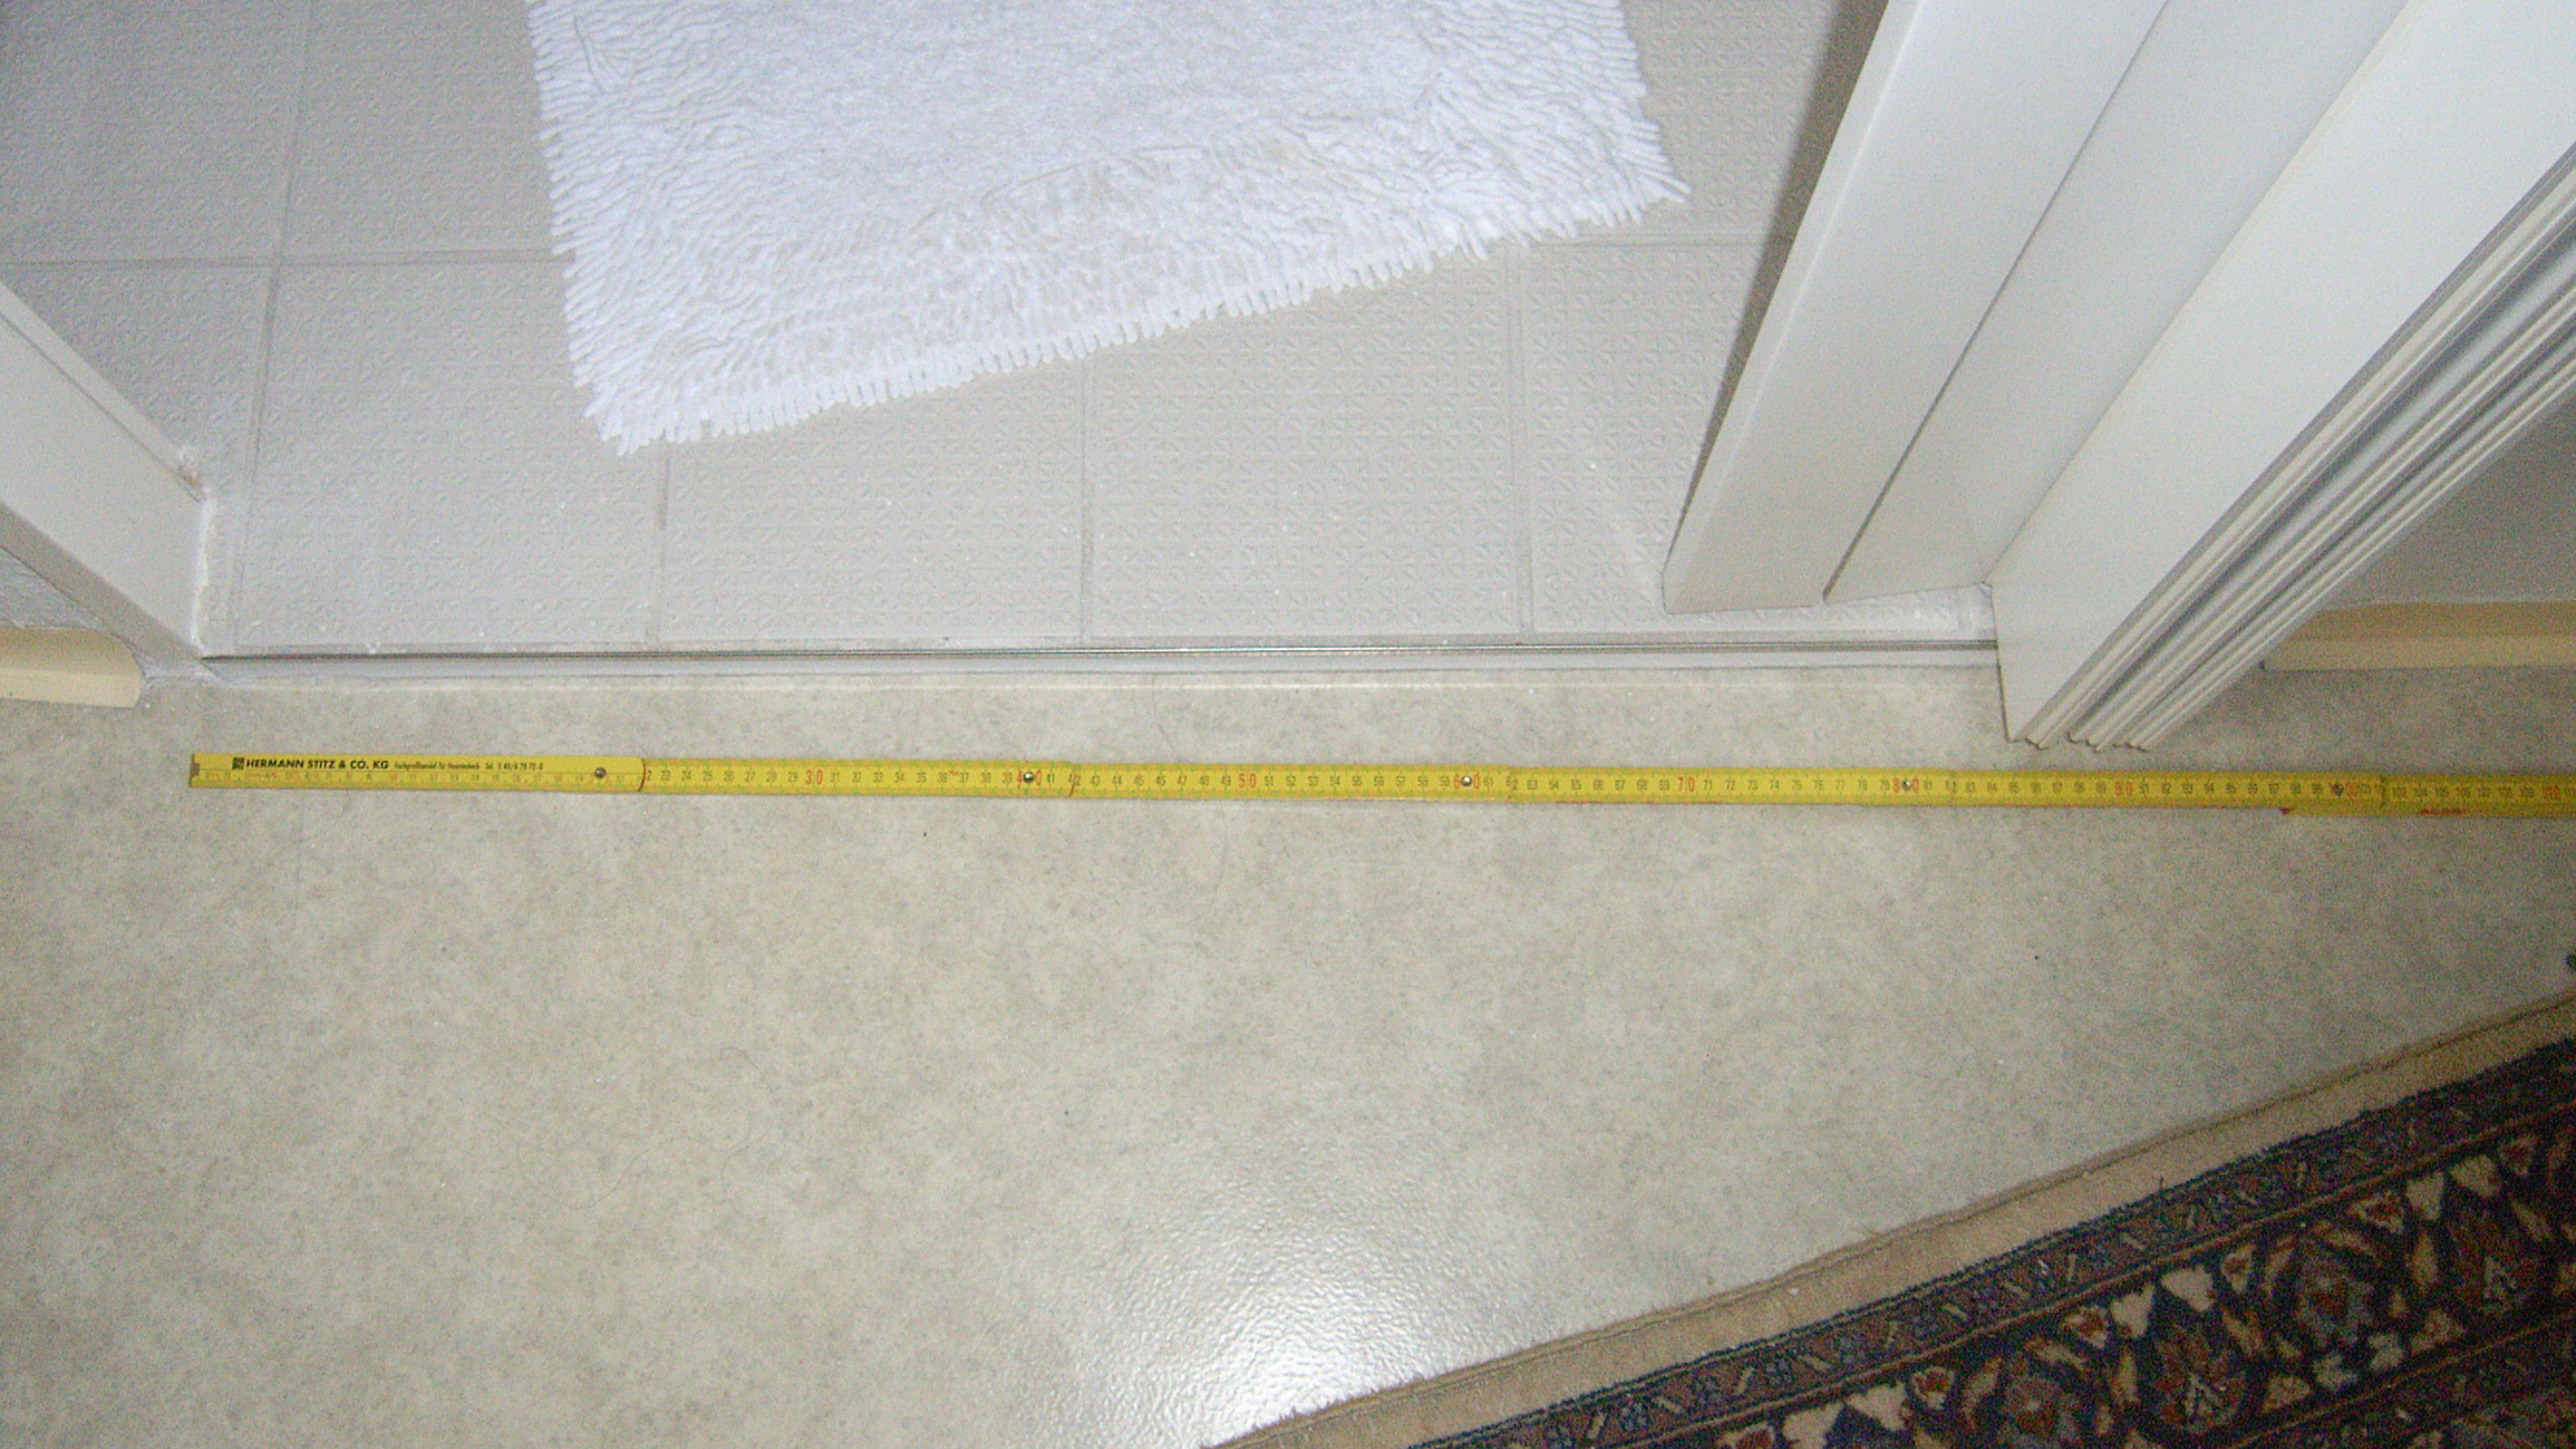 Zur Messung der Türbreite liegt ein Zollstock neben der Türschwelle am Boden.